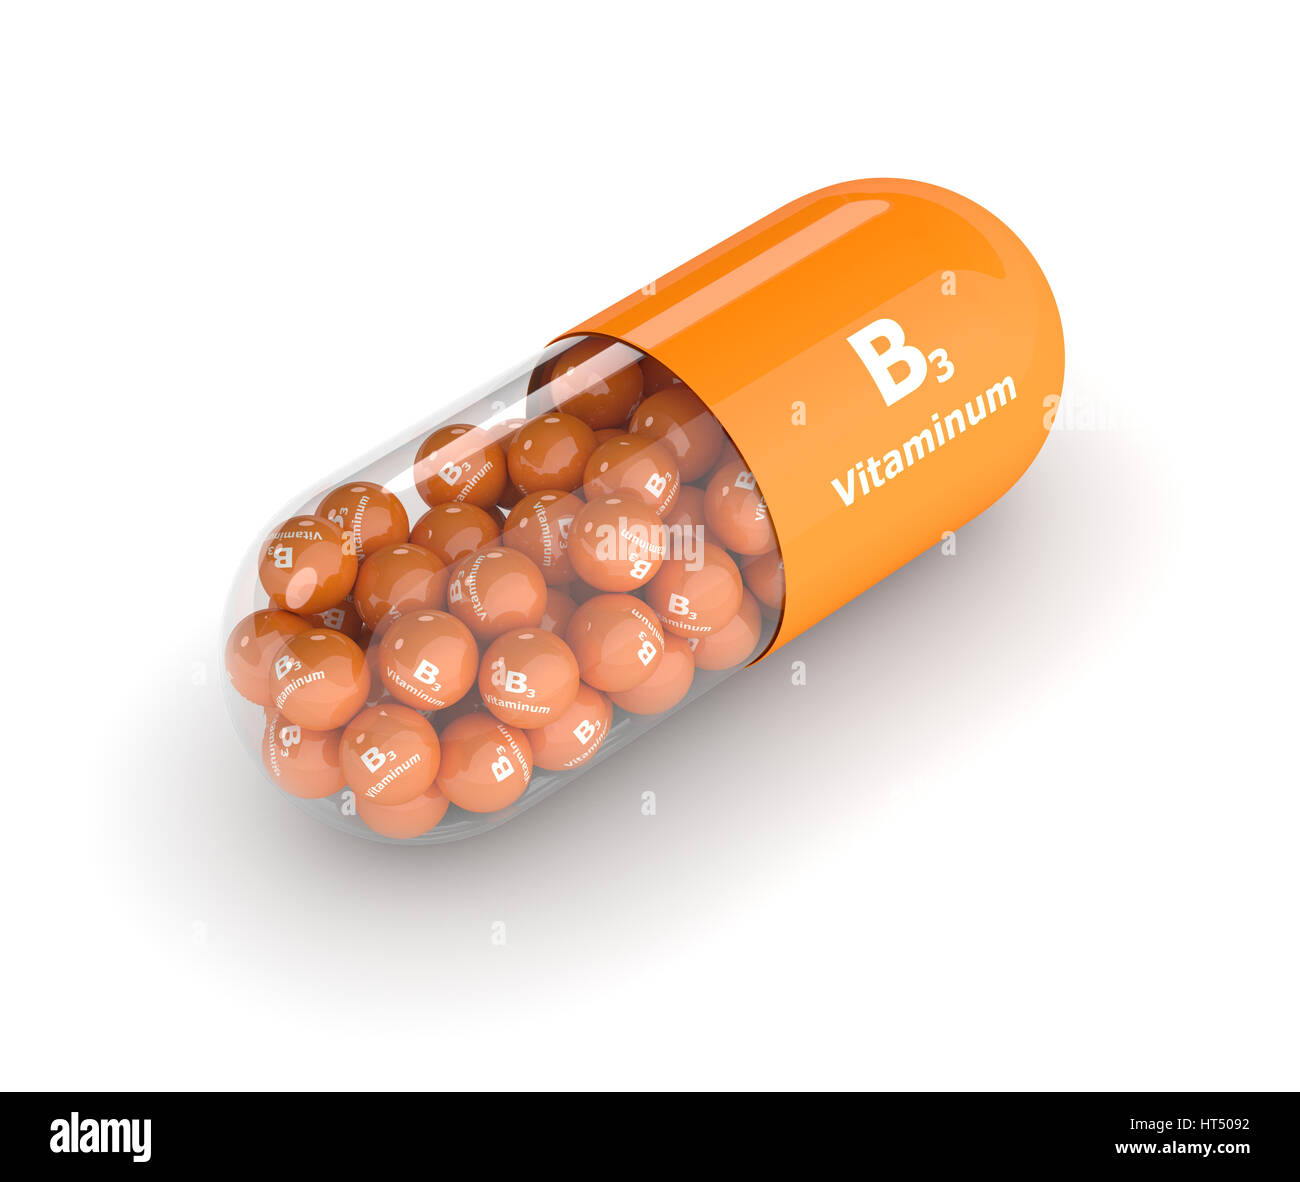 Витамин б в капсулах. Витамин b3. Витамин в3 в капсулах. Витамин b3 в таблетках. Niacinamide b3.